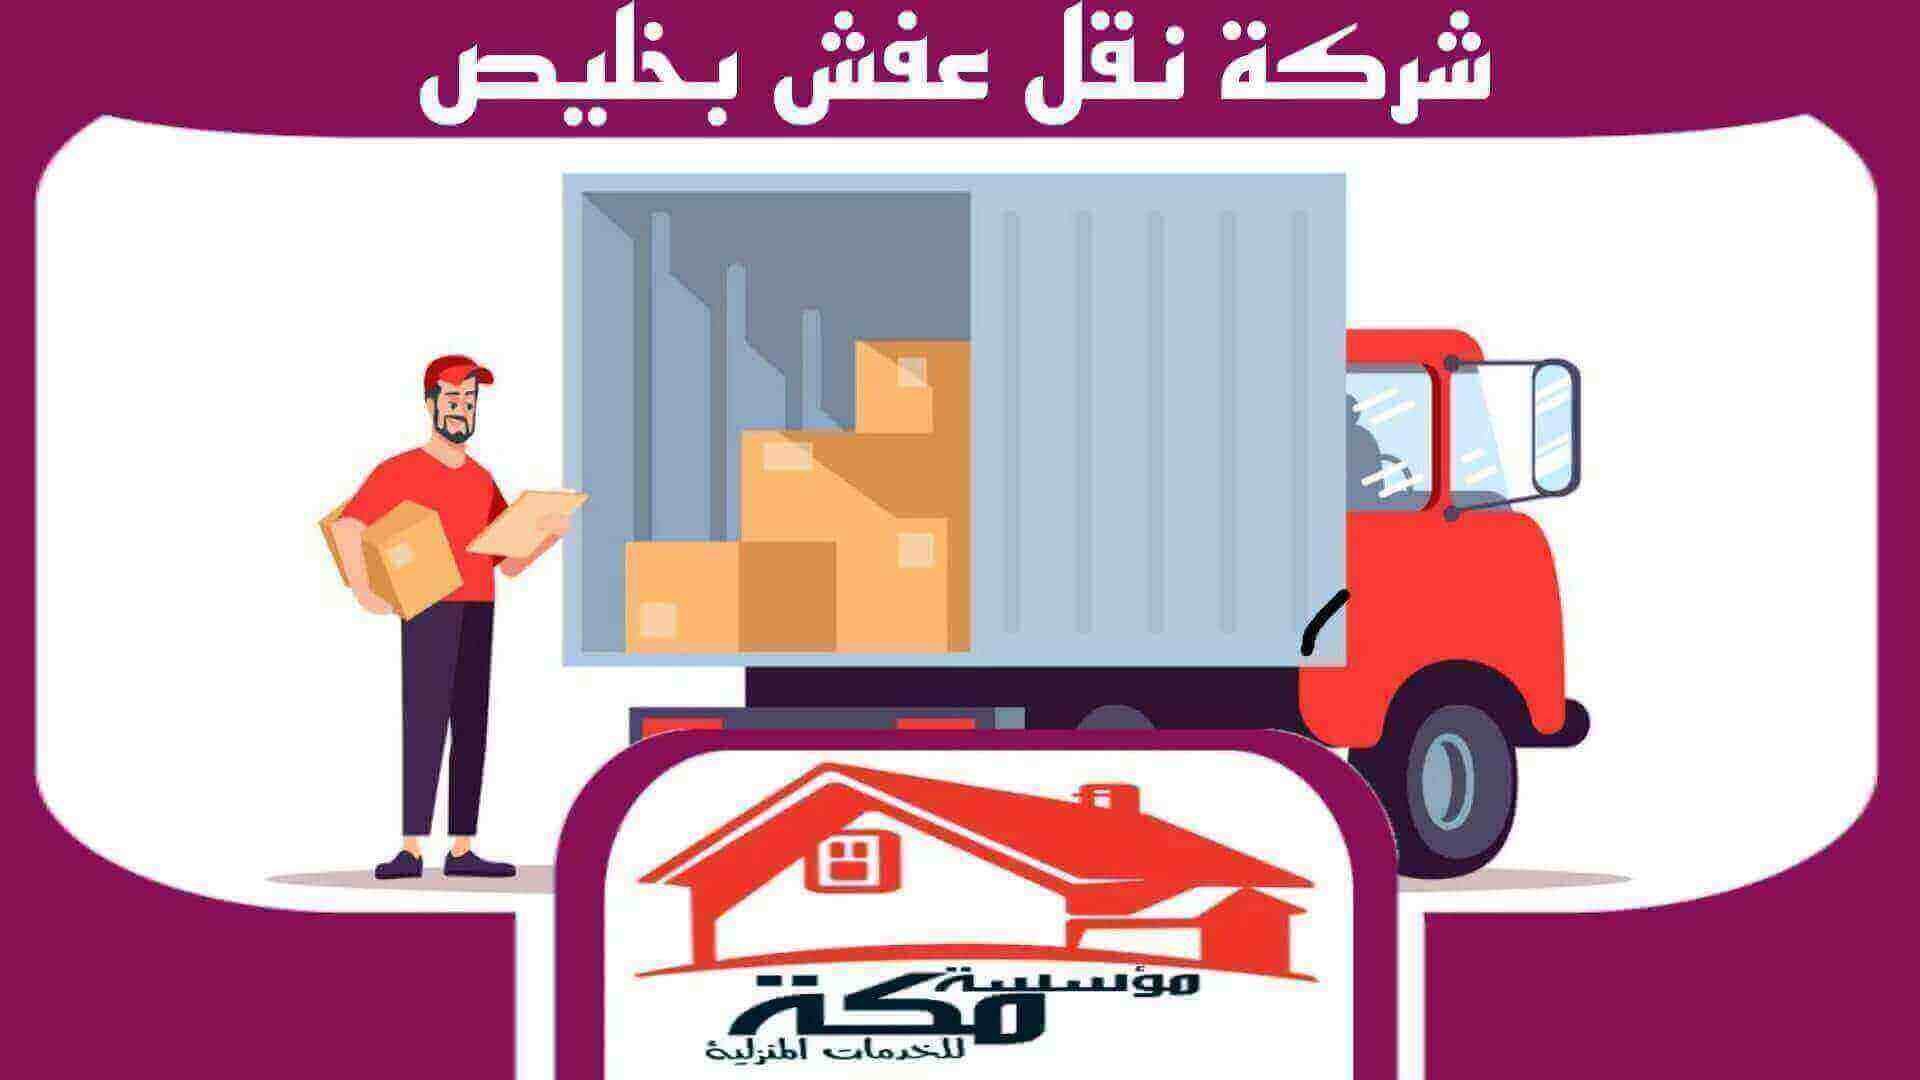 شركة نقل عفش بخليص رخيصة بكوبون خصم لفترة محدودة #مكة للخدمات المنزلية